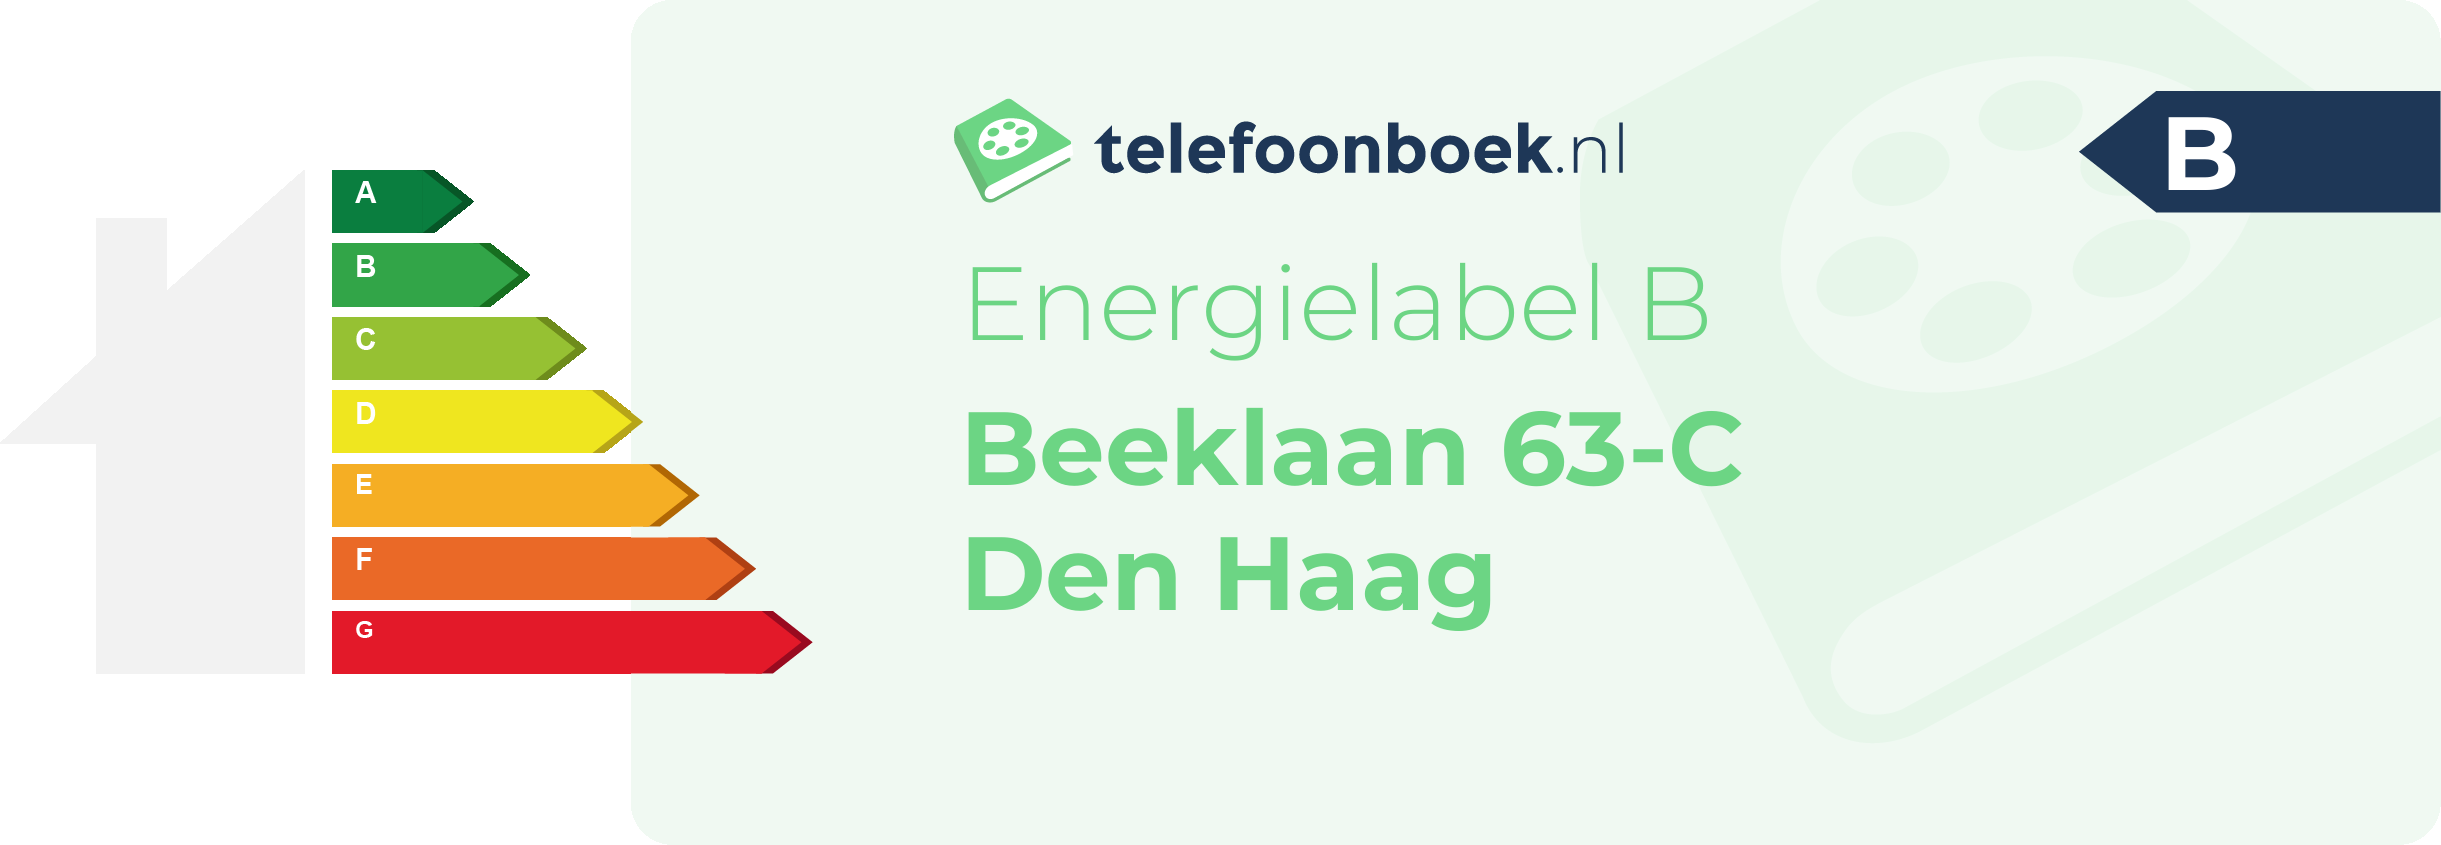 Energielabel Beeklaan 63-C Den Haag